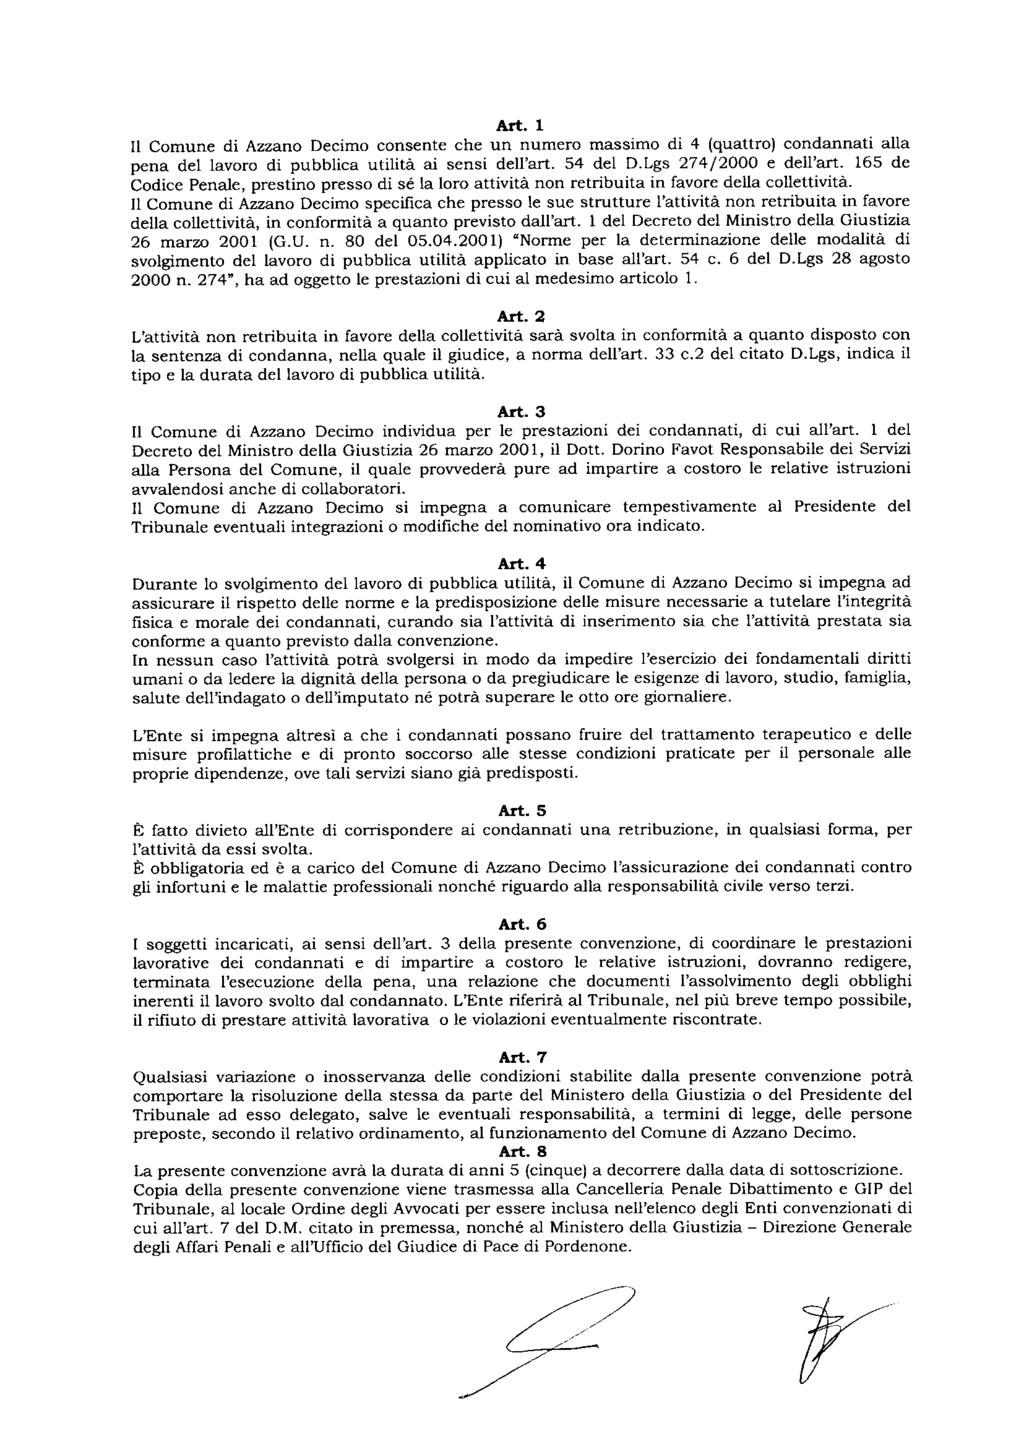 Art. 1 11 Comune di Azzano Decimo consente che un numero massimo di 4 (quattro) condannati alla pena del lavoro di pubblica utilità ai sensi dell'art. 54 del D.Lgs 274/2000 e dell'art.